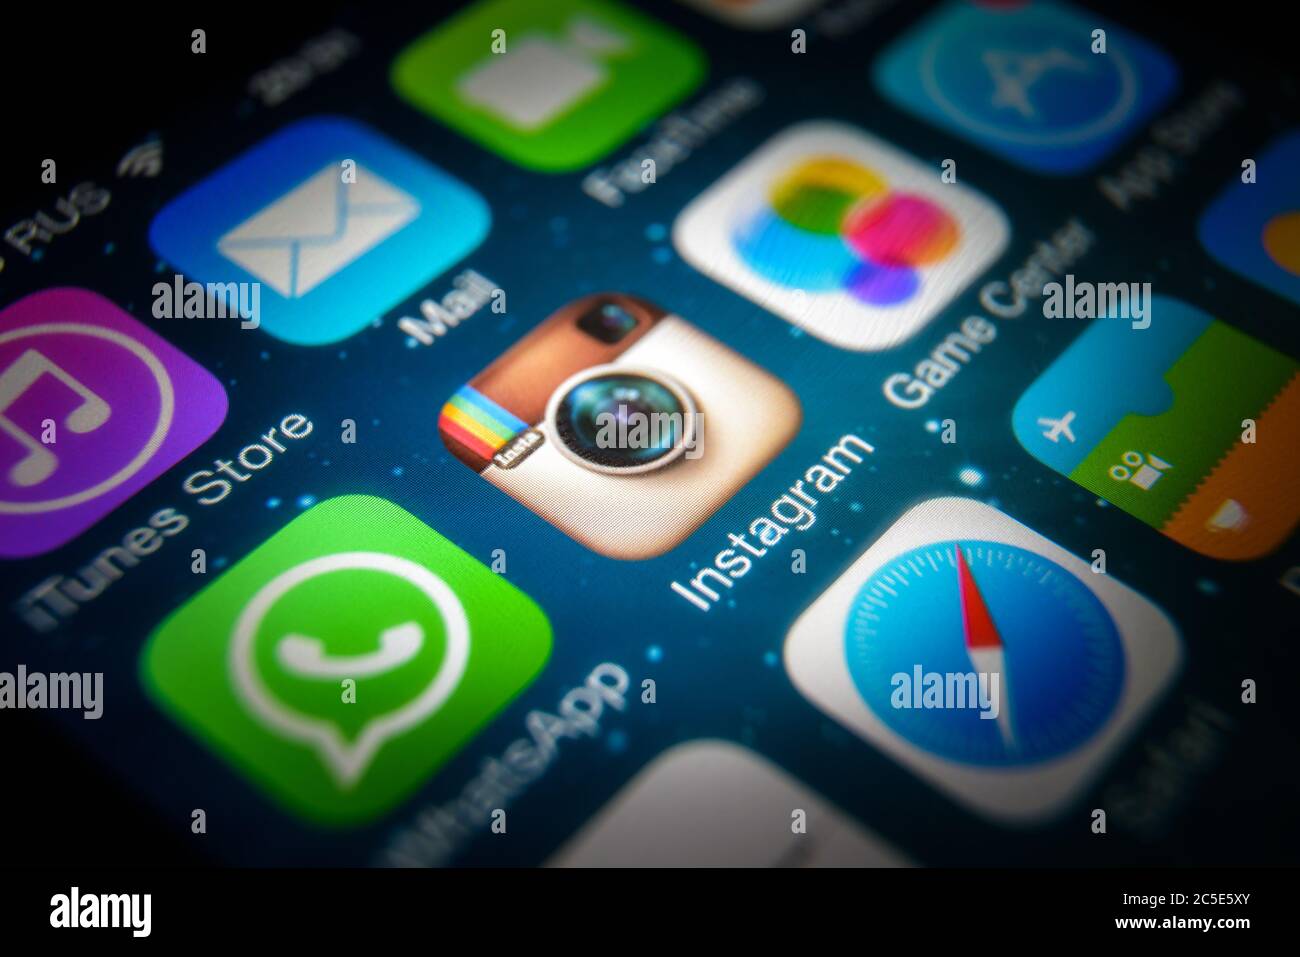 Moscou - 11 mars 2019 : gros plan du logo Instagram sur l'écran de l'iPhone. Icône d'application des réseaux sociaux Instagram sur smartphone, vue macro. Instagram et Banque D'Images